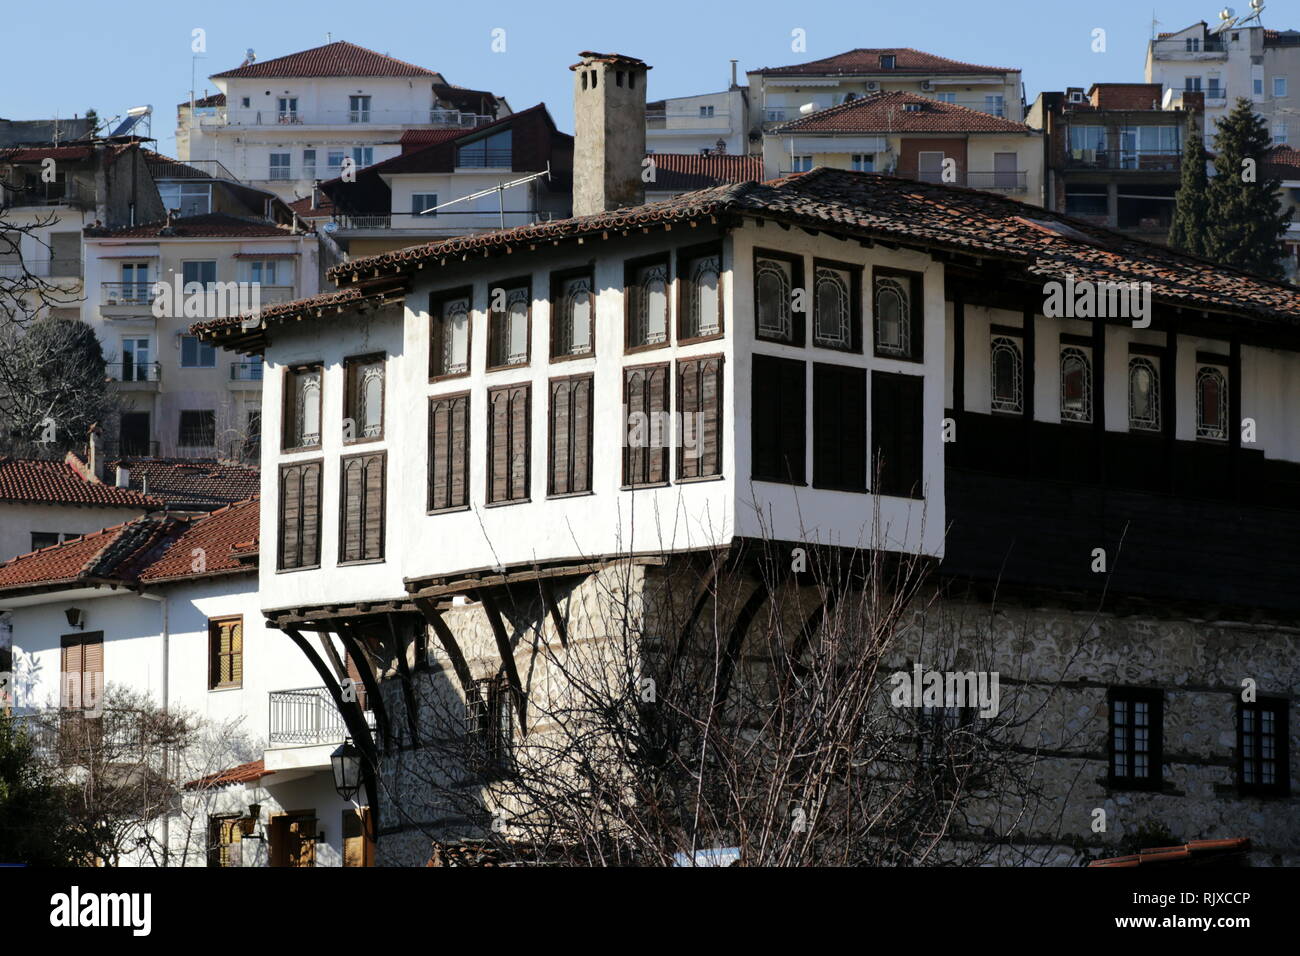 Hôtel particulier de l'époque ottomane, sachnisi avec un type traditionnel de baie vitrée, accueille actuellement le Musée du Costume de la ville de Kastoria, Grèce. Banque D'Images